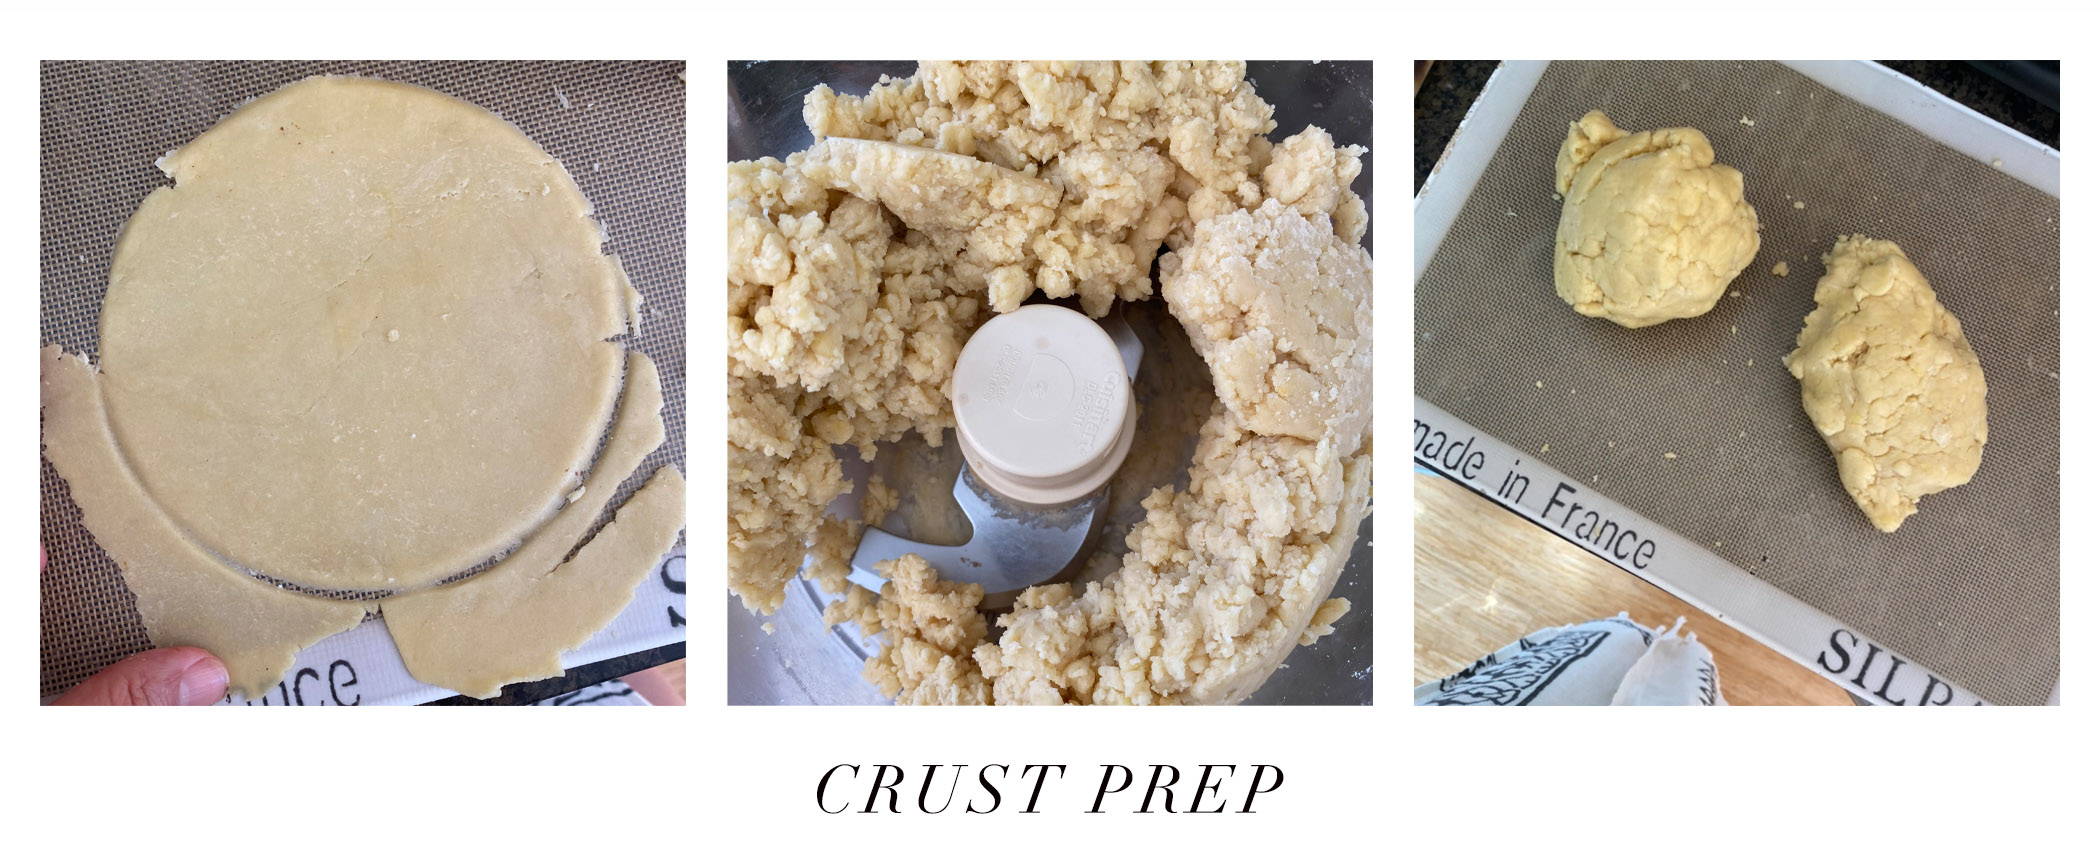 Crust prep process for a homemade empanada recipe